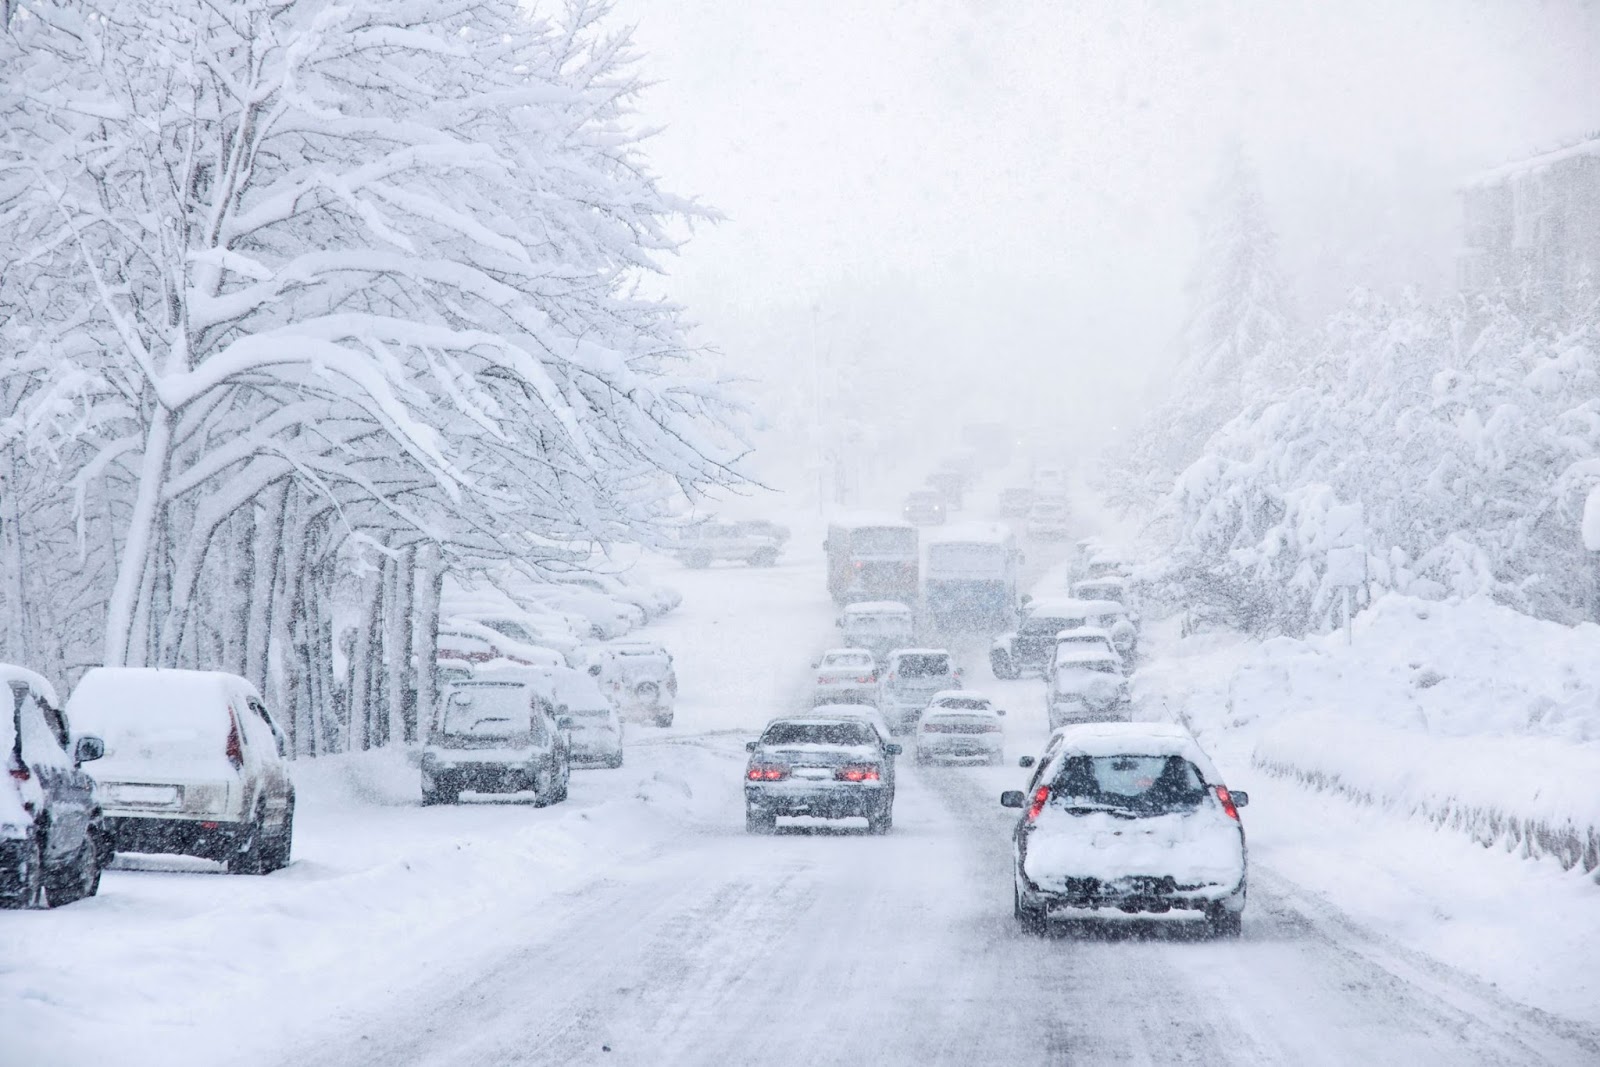 Прогноз погоды: на Украину надвигается снежный шторм, в полиции сделали срочное заявление для водителей